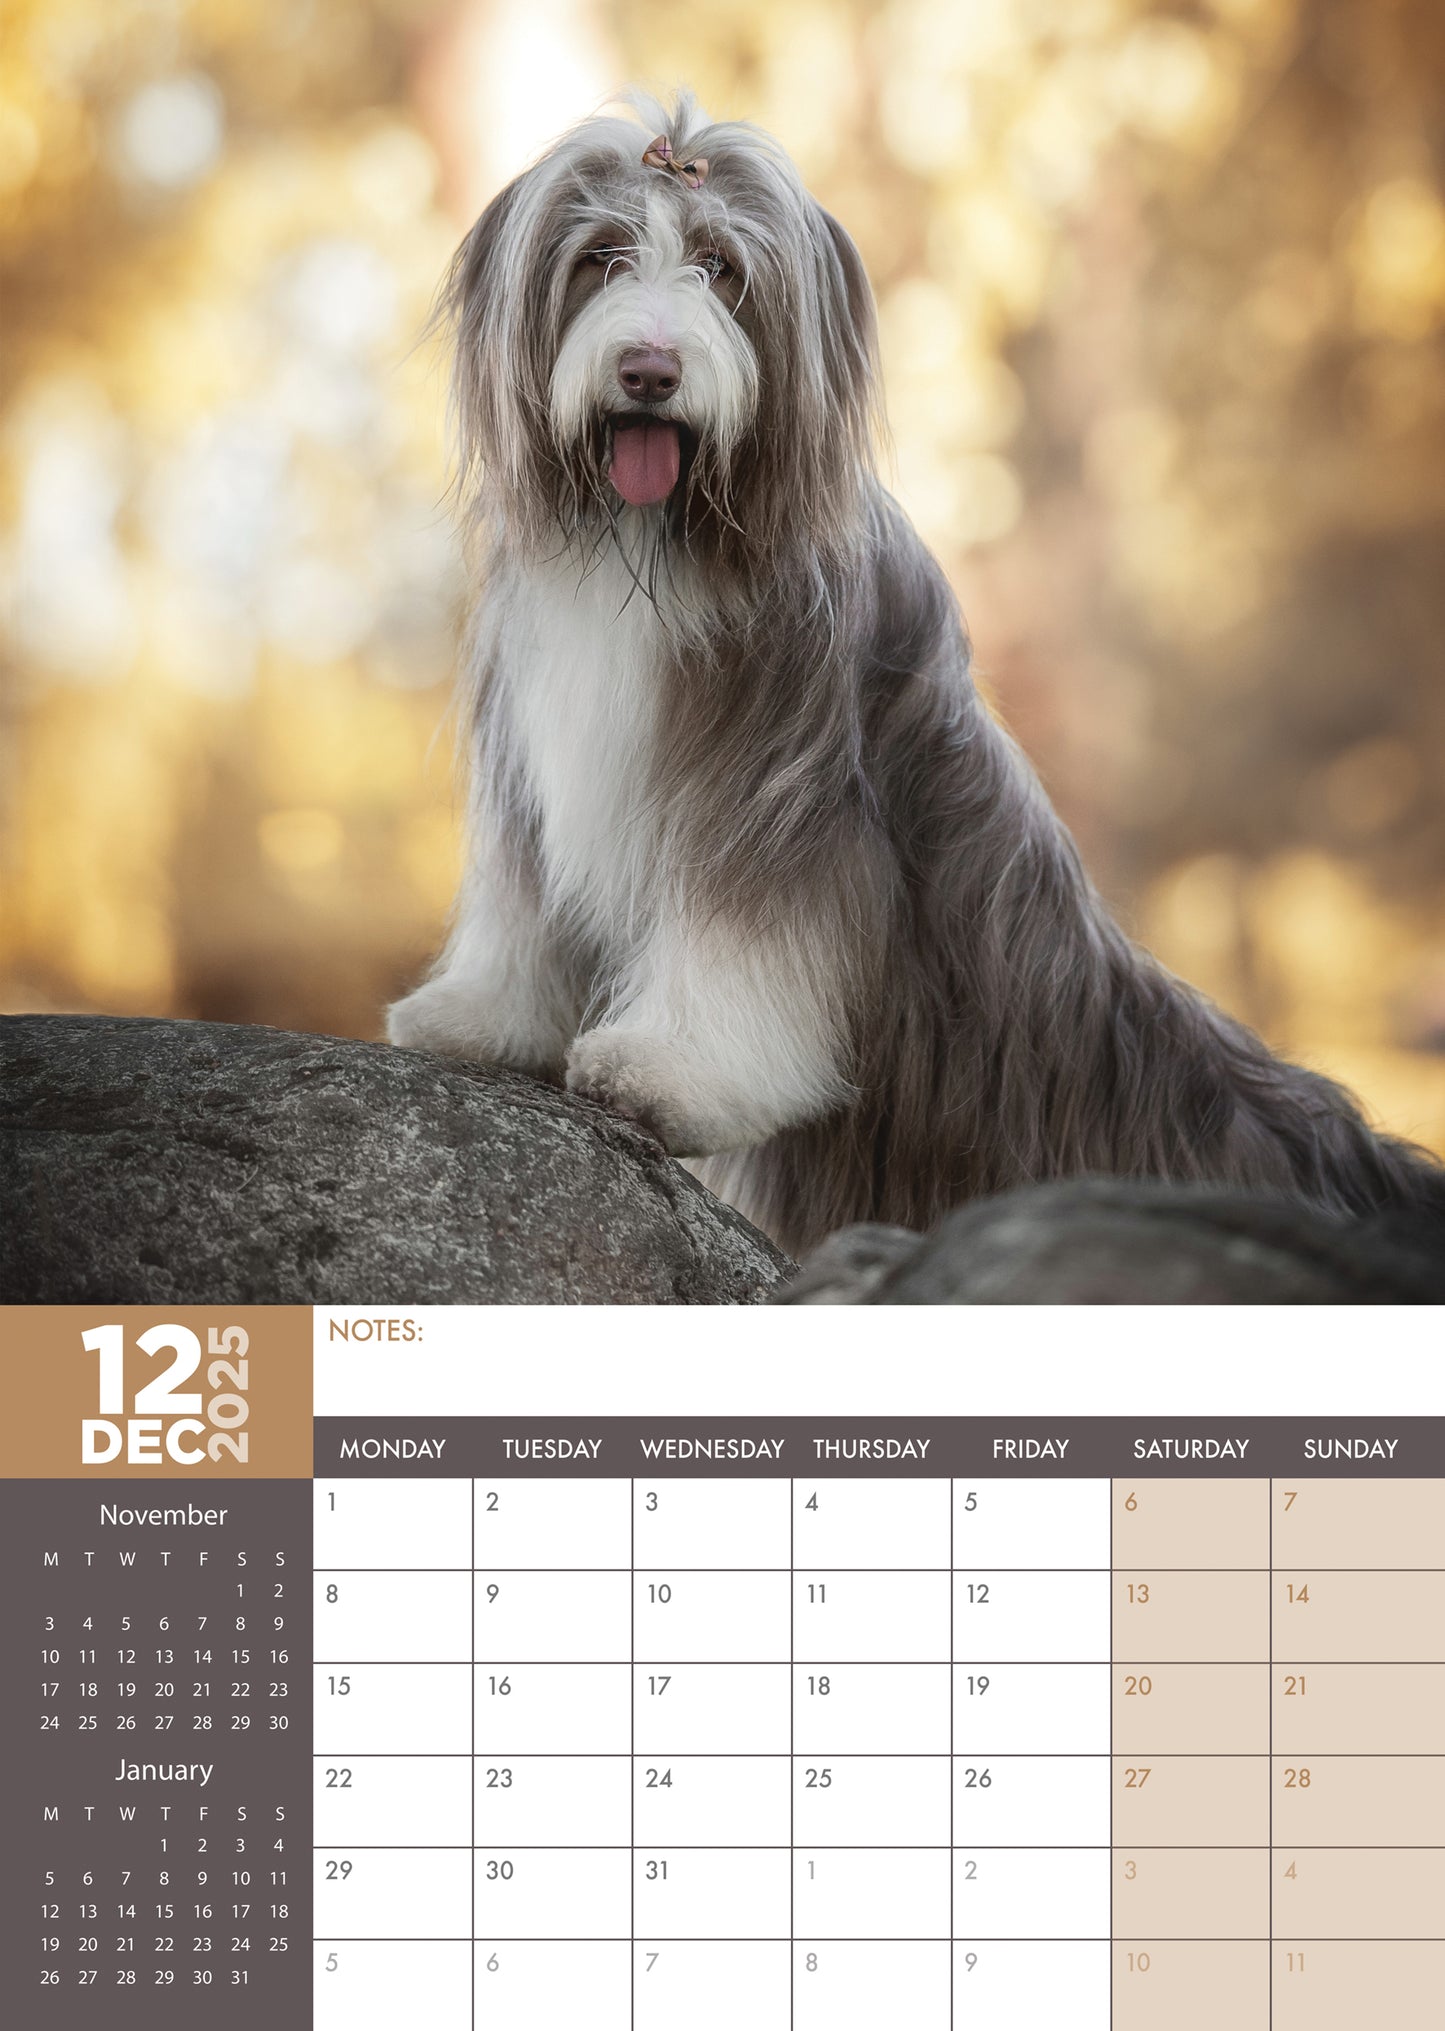 Bearded Collie Calendar 2025